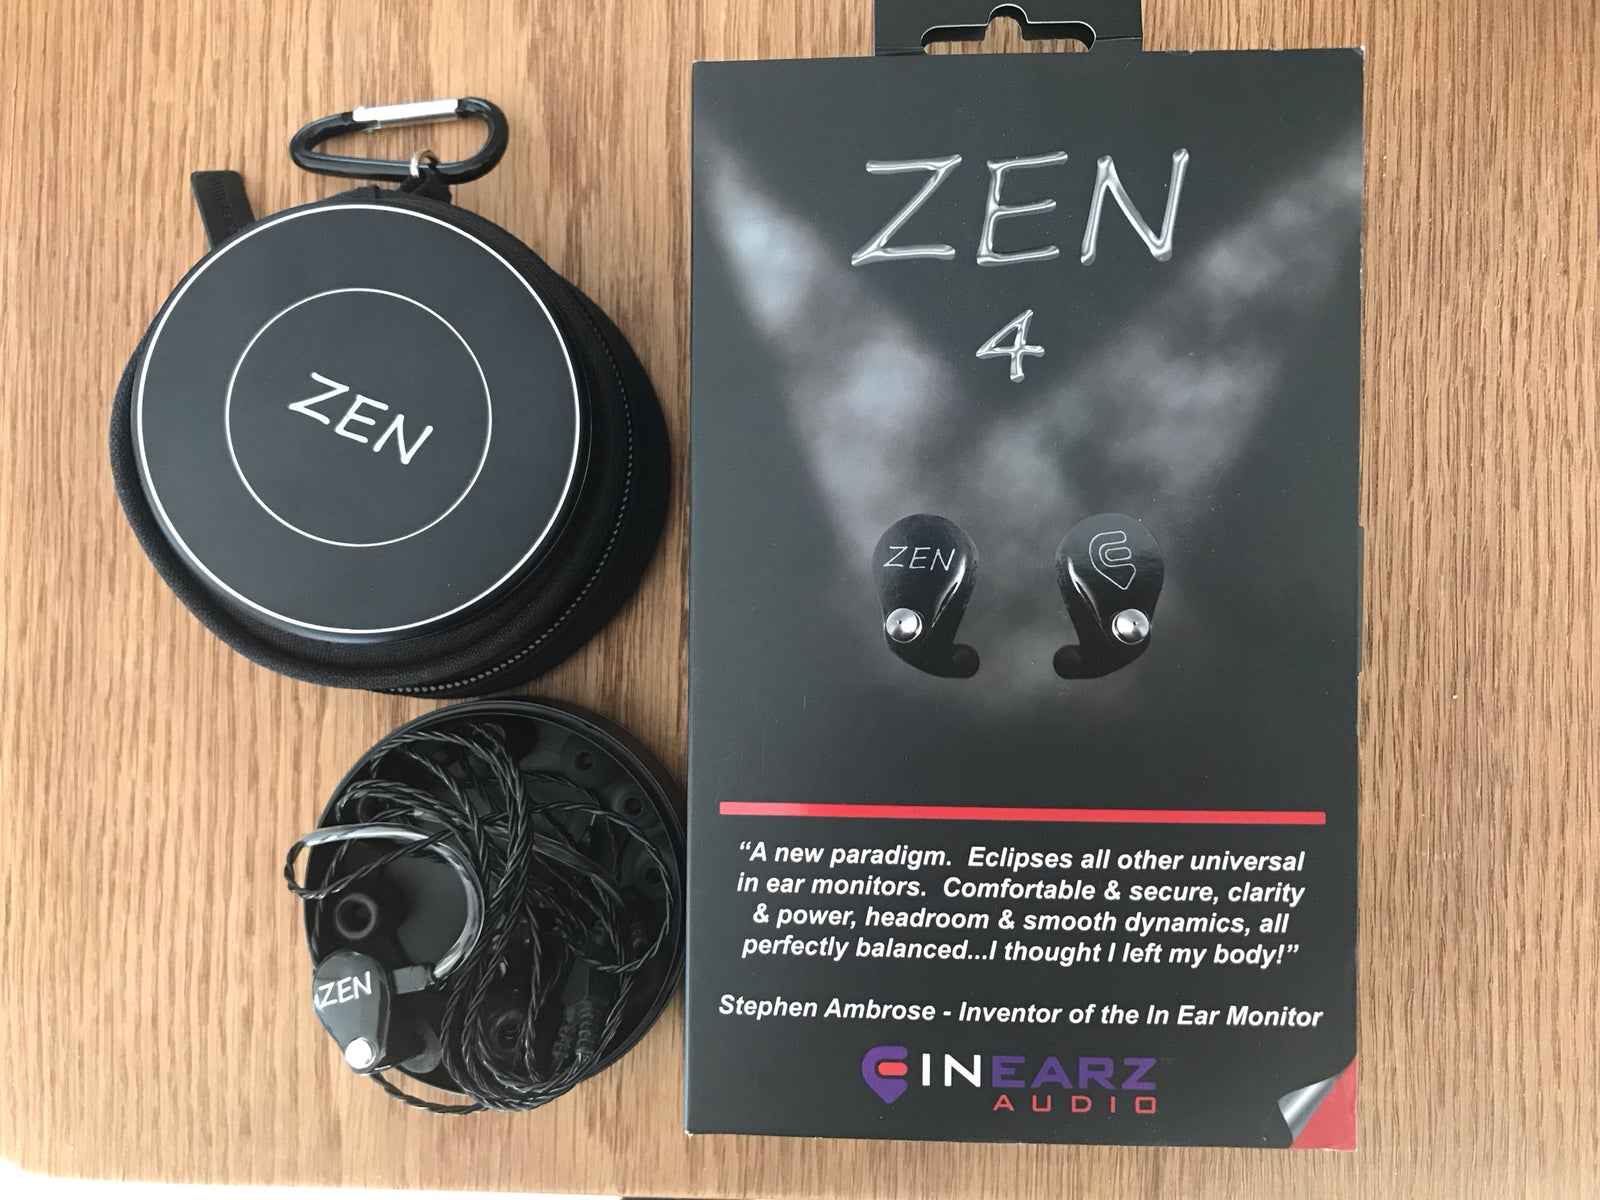 In Ear, Universal-Inearz Zen 4